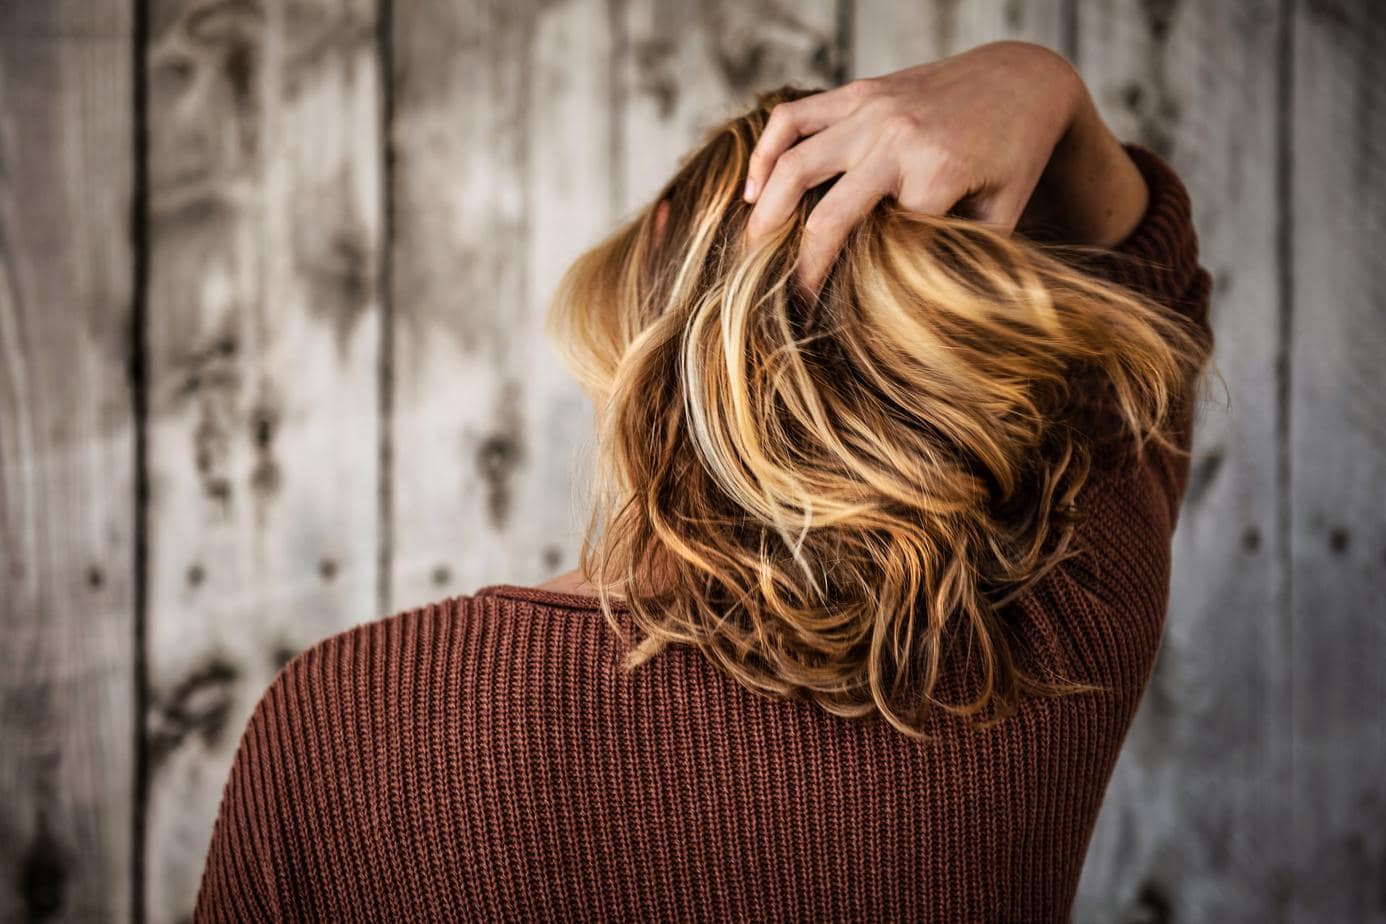 Co to jest tzw. przeziębienie włosów i jakie są konsekwencje dla ich kondycji?